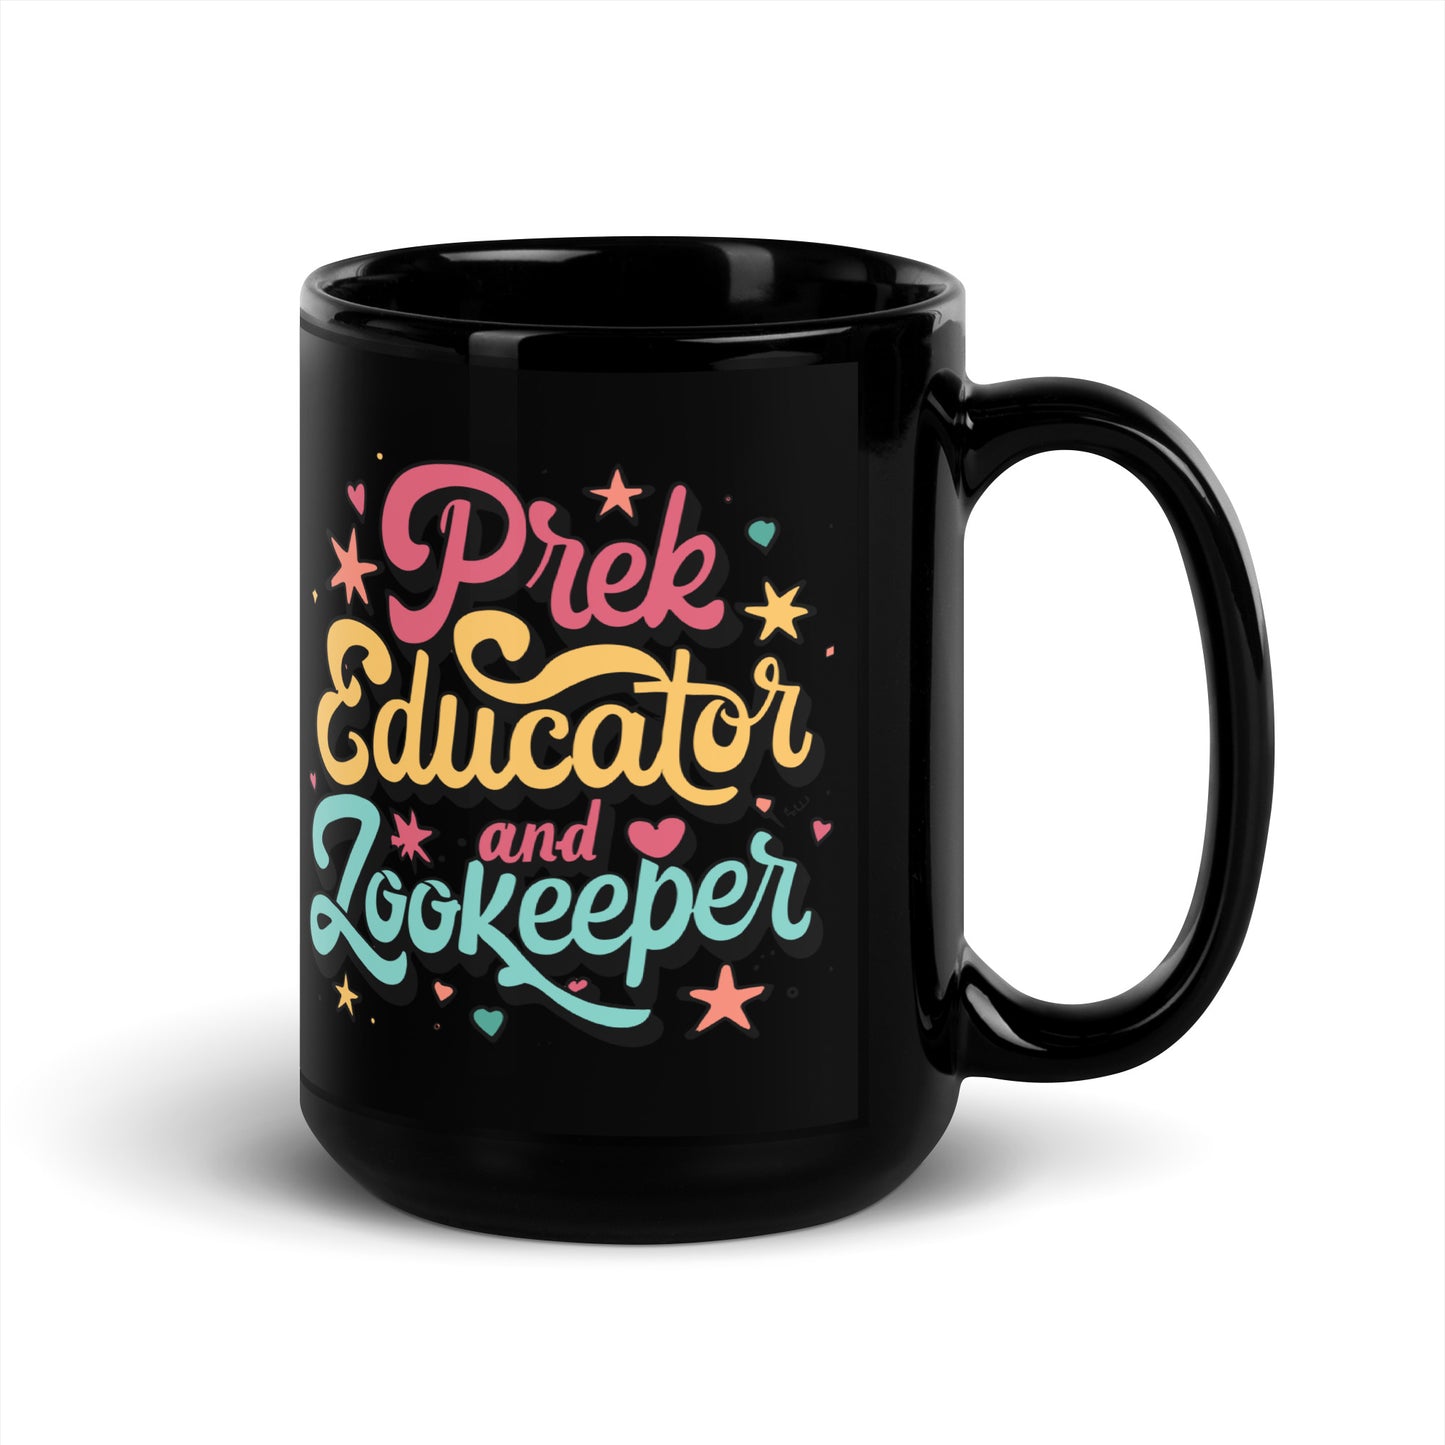 PreK Teacher Coffee Mug - "PreK Educator and Zookeeper"